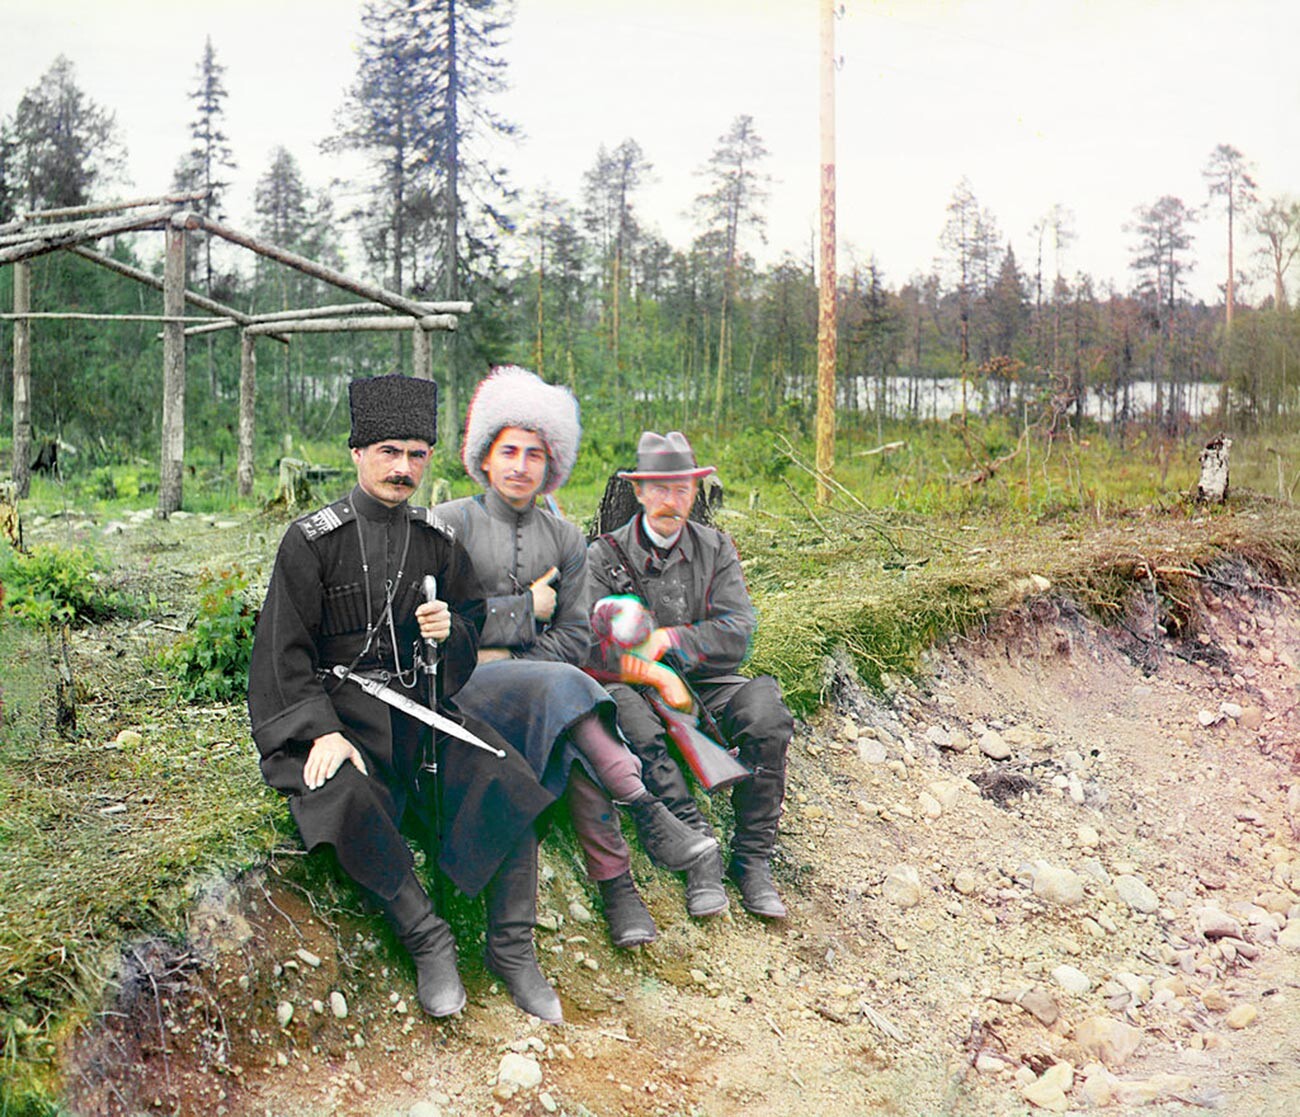 Fotograf Sergei Prokudin-Gorskii und zwei Männer in kaukasischer Kleidung, 1916.